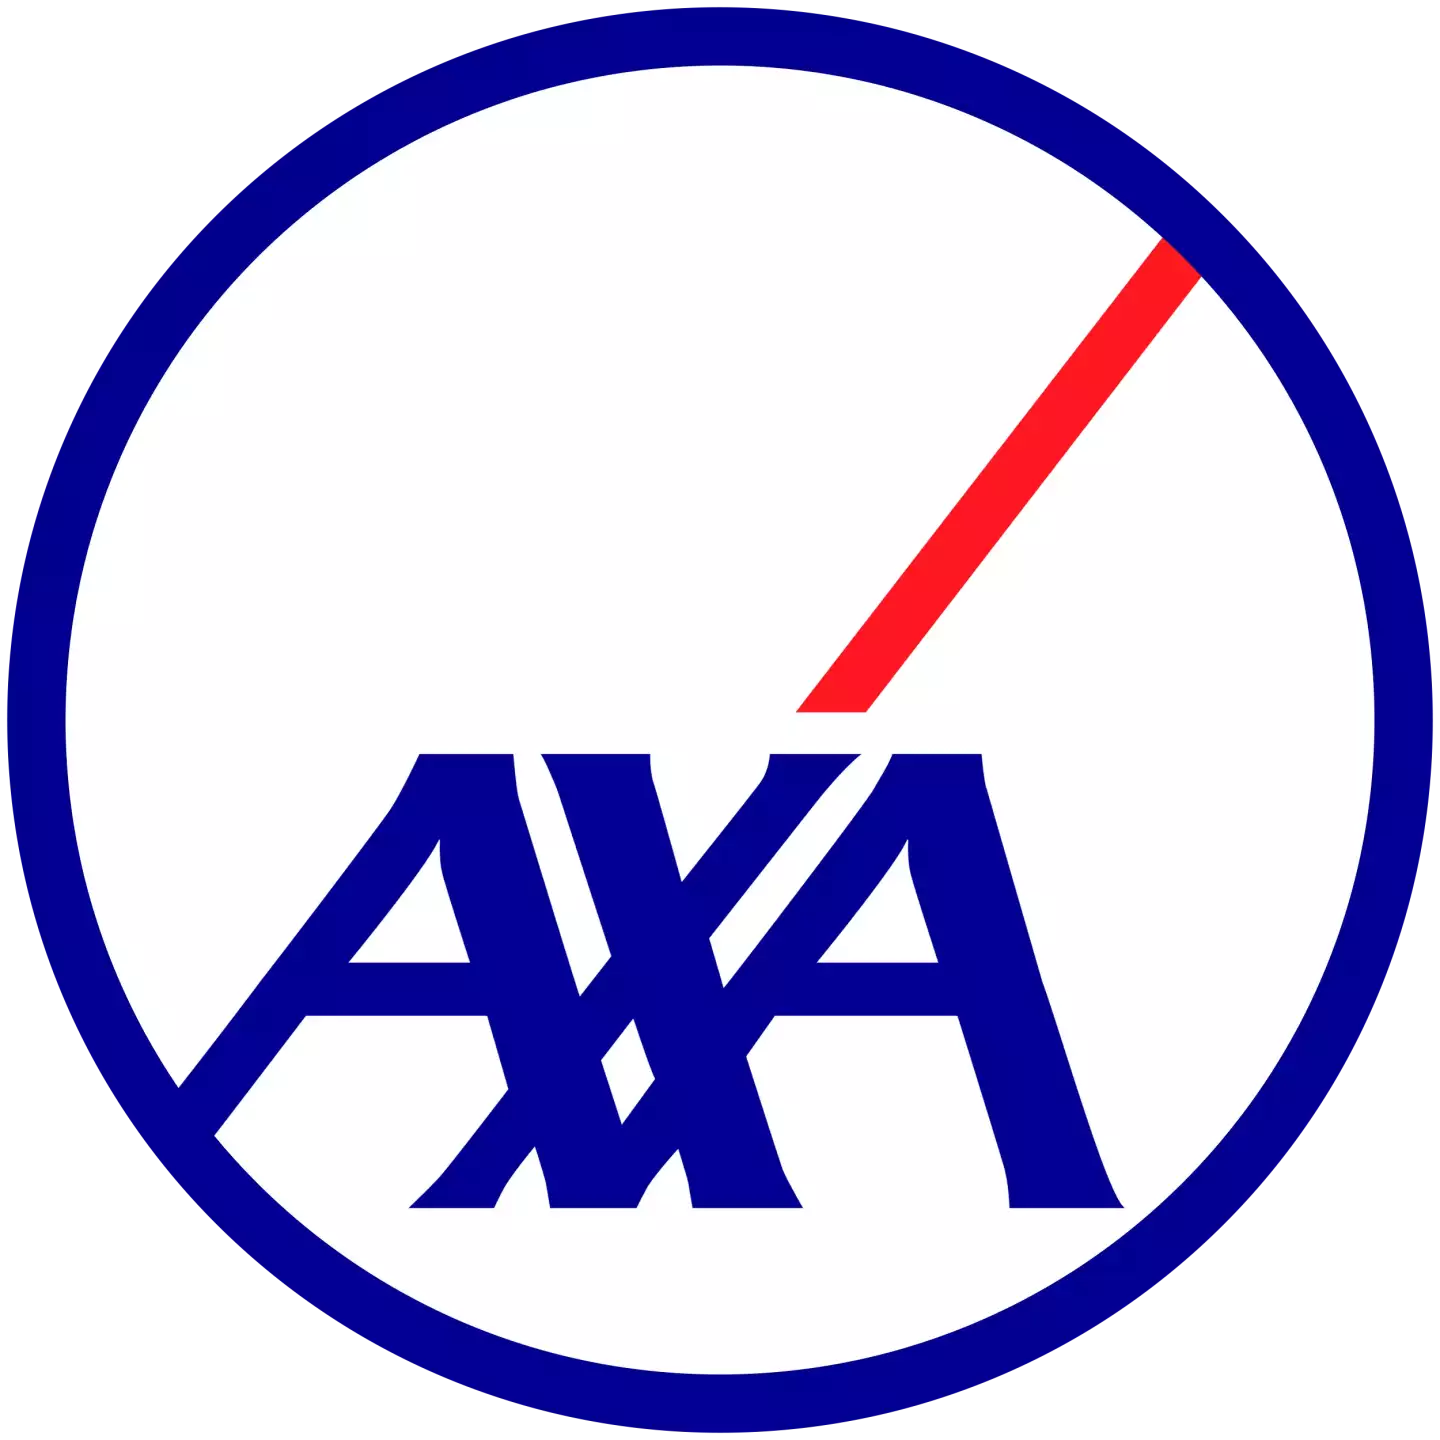 AXA Versicherung AG